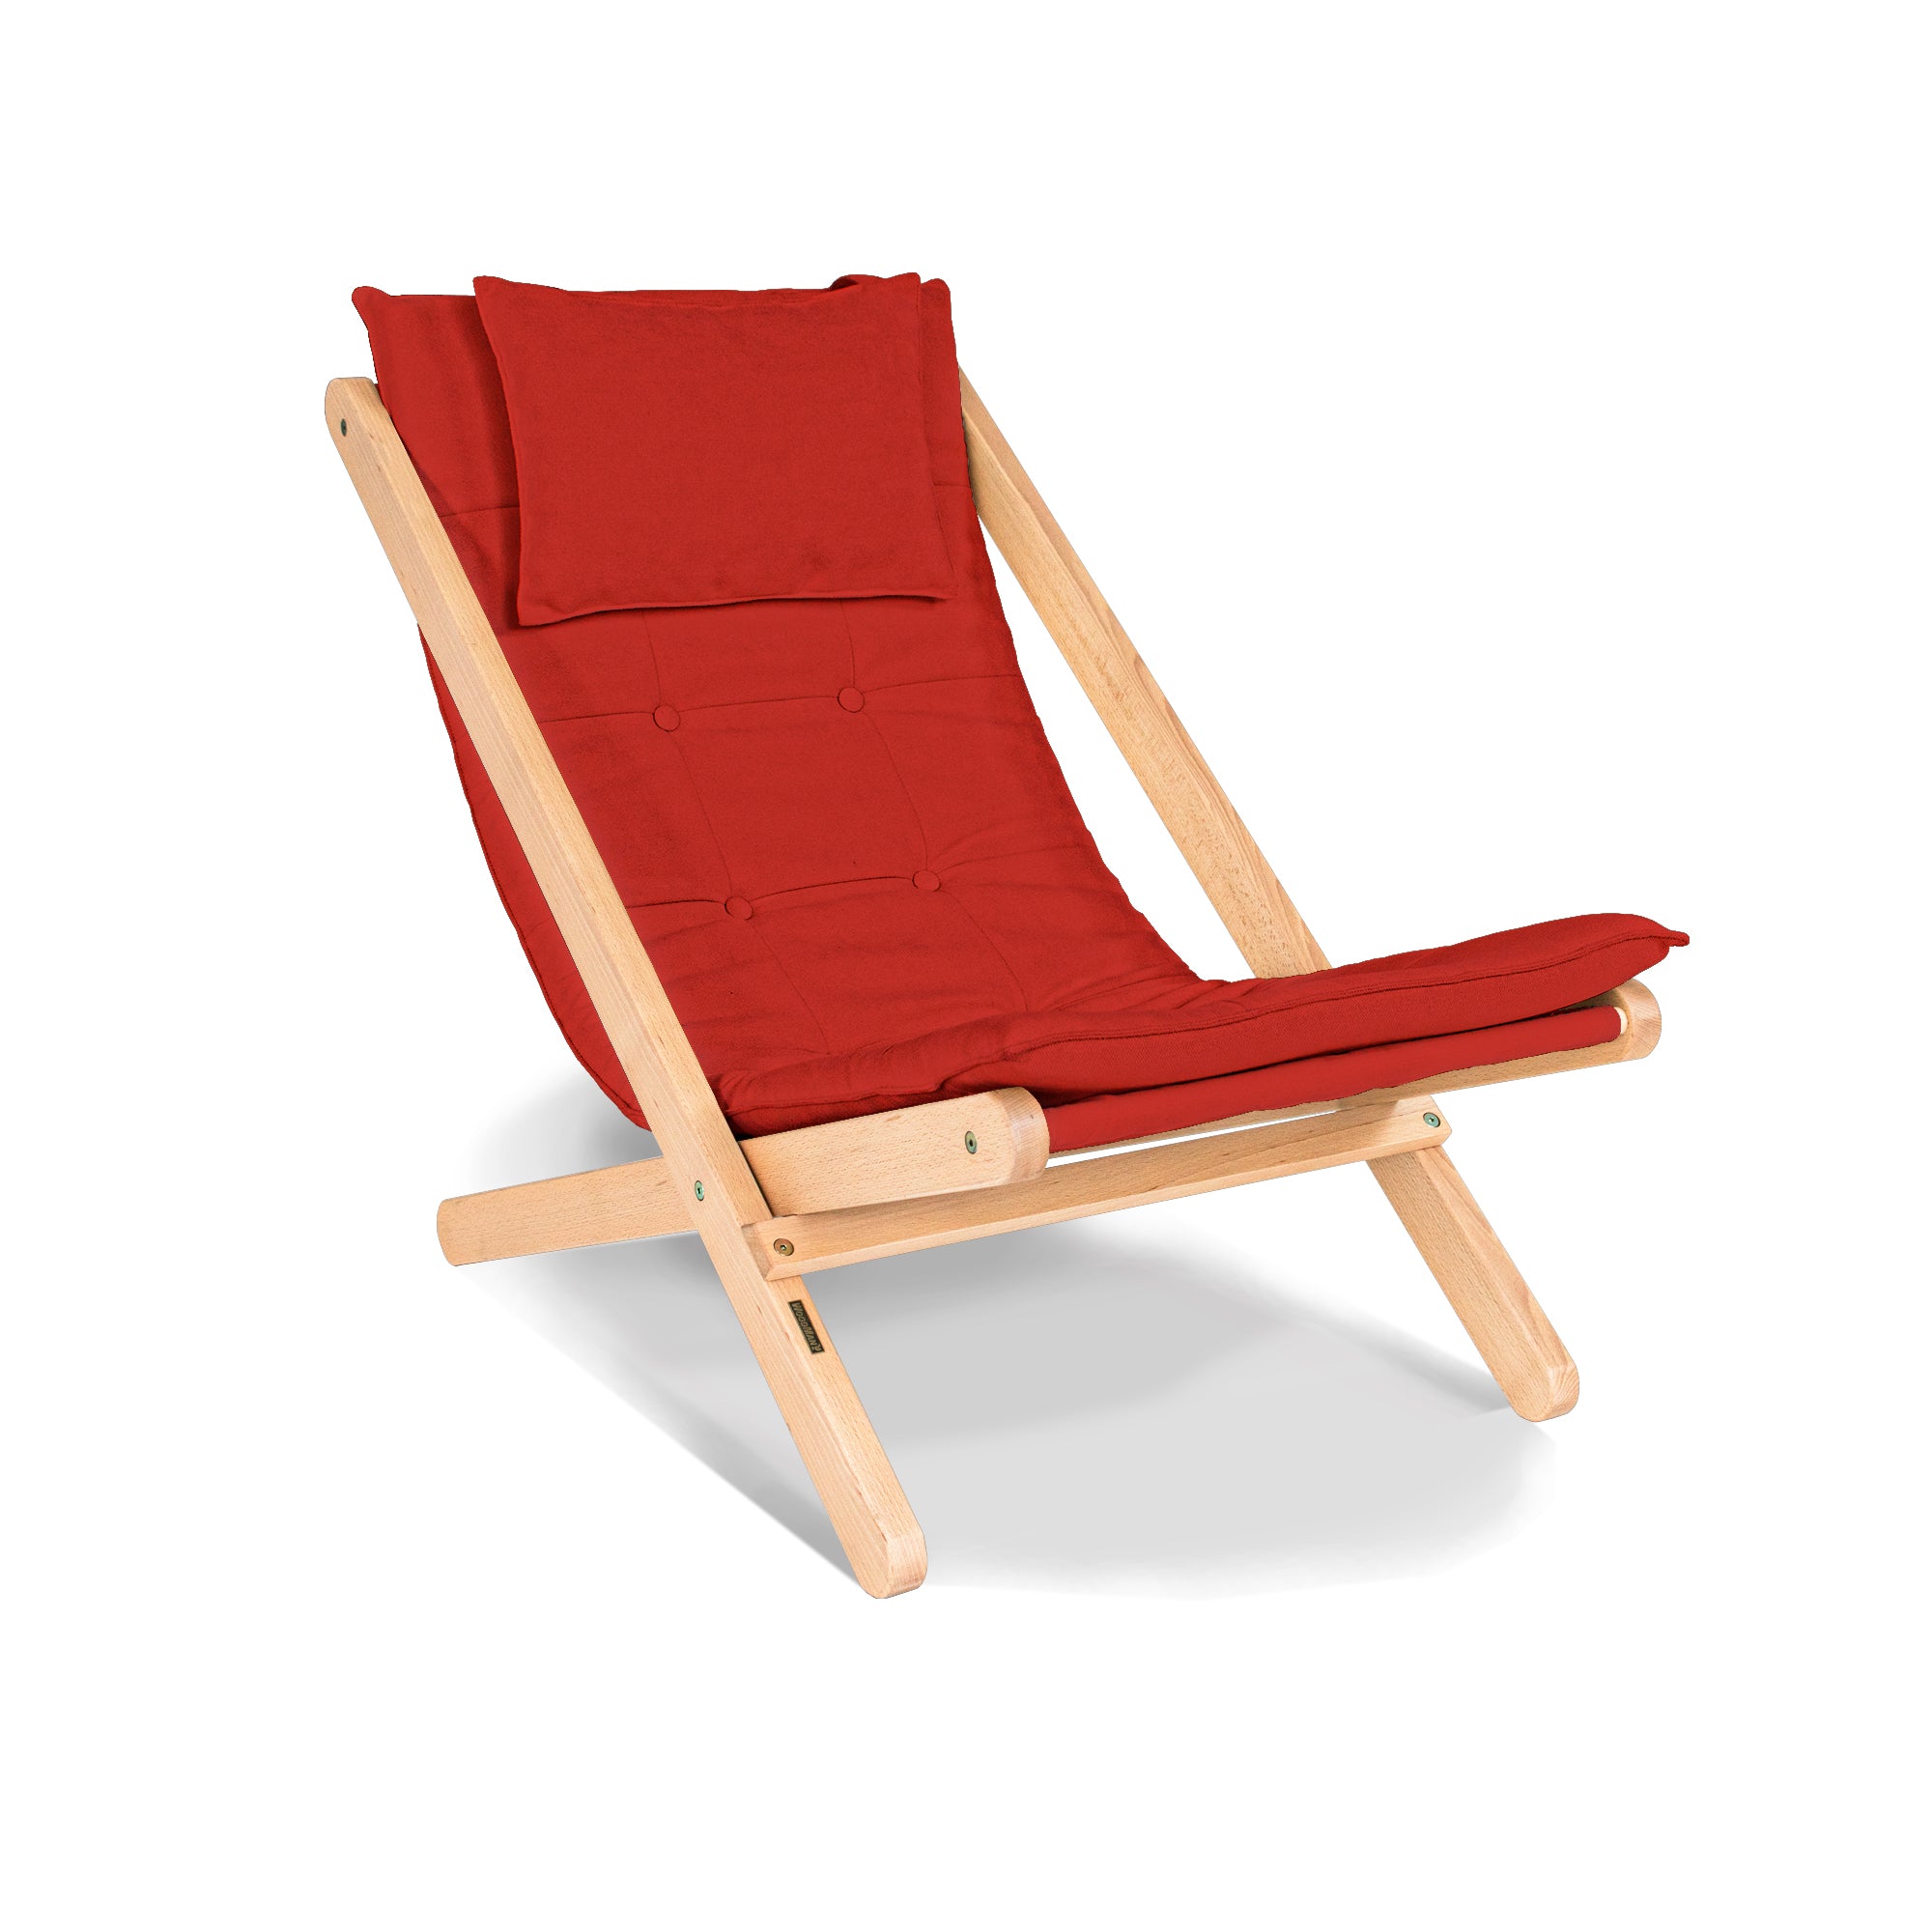 ALLEGRO Deckchair -red fabric